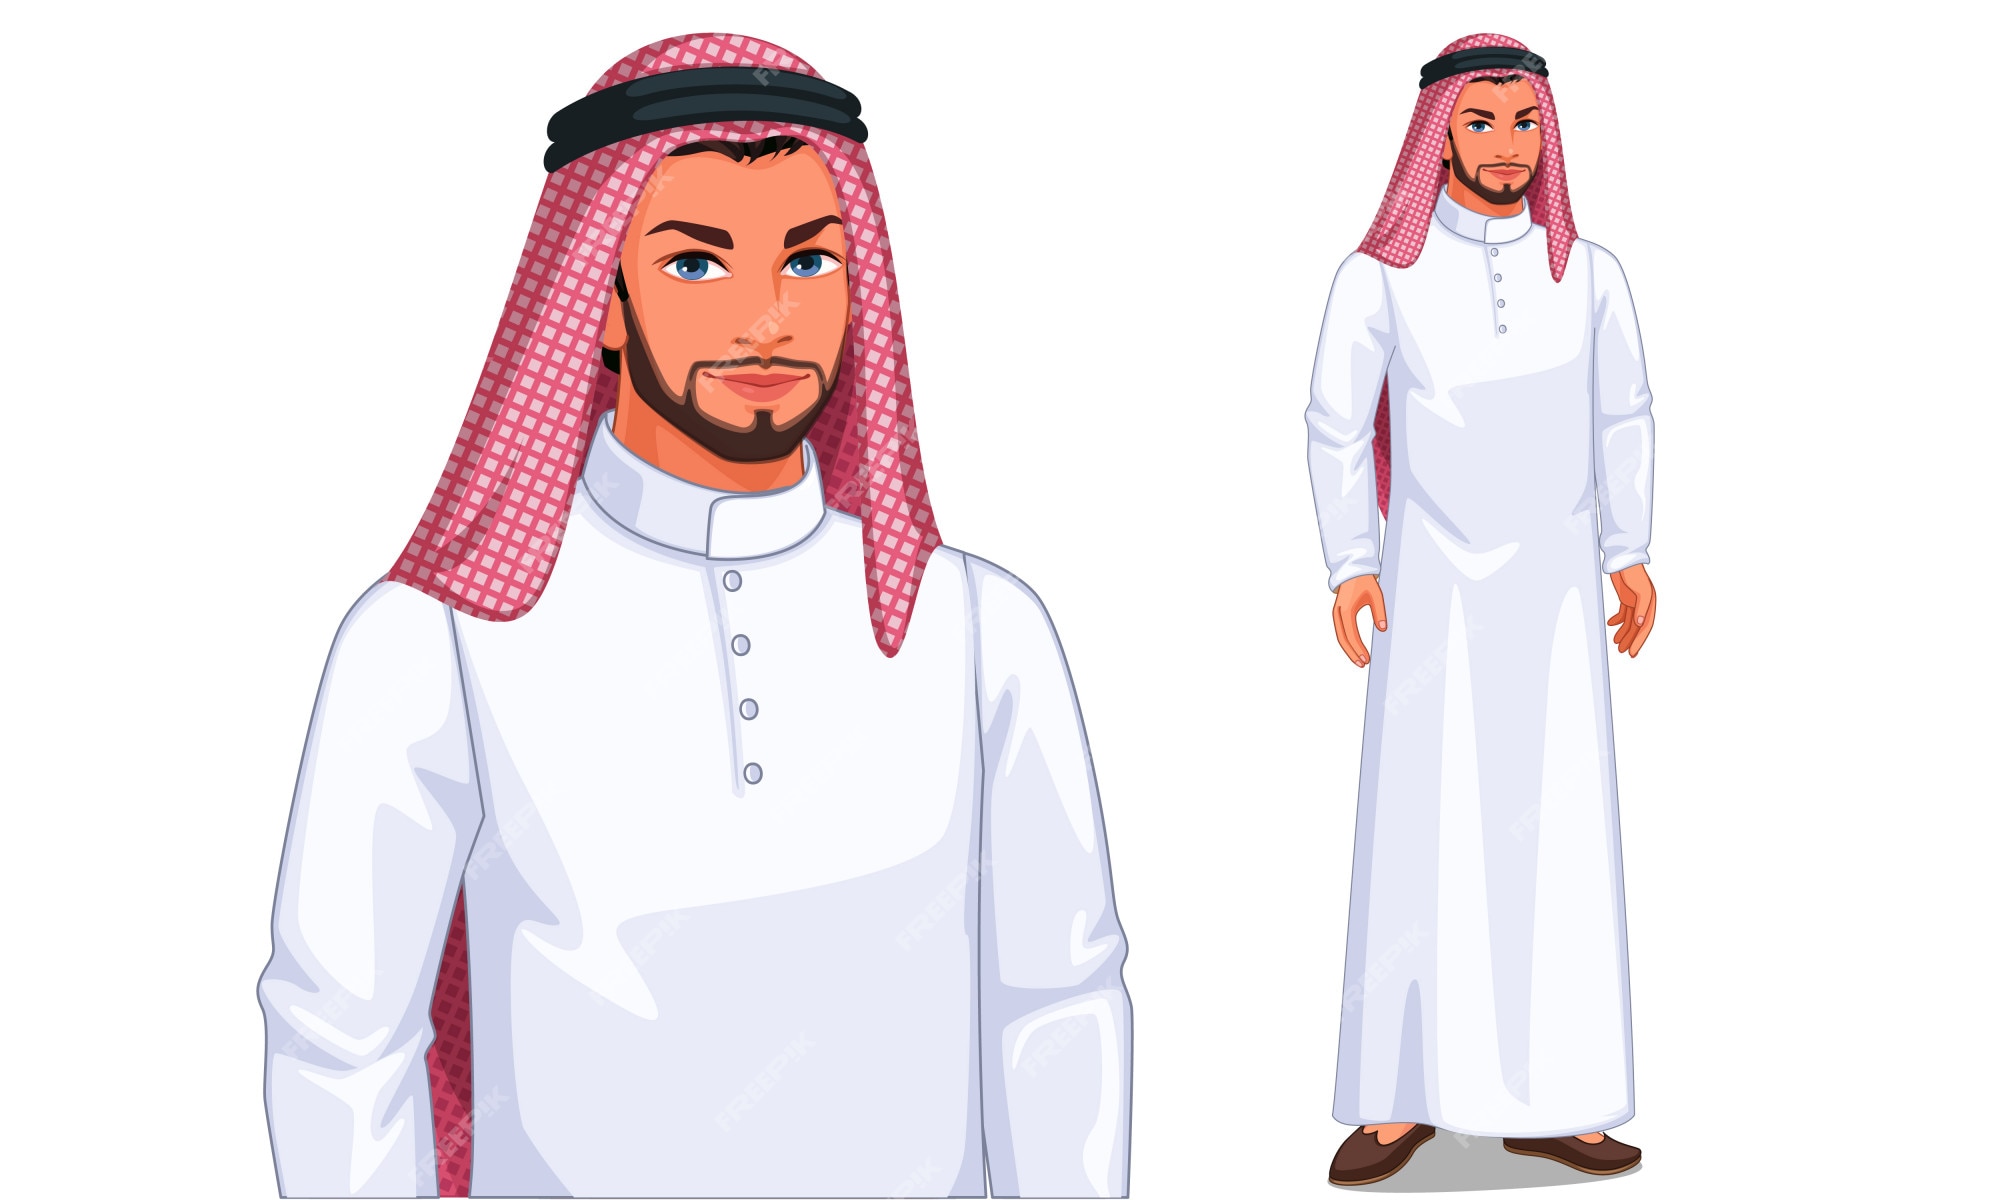 Page 2 | Arabic Man Images - Free Download on Freepik